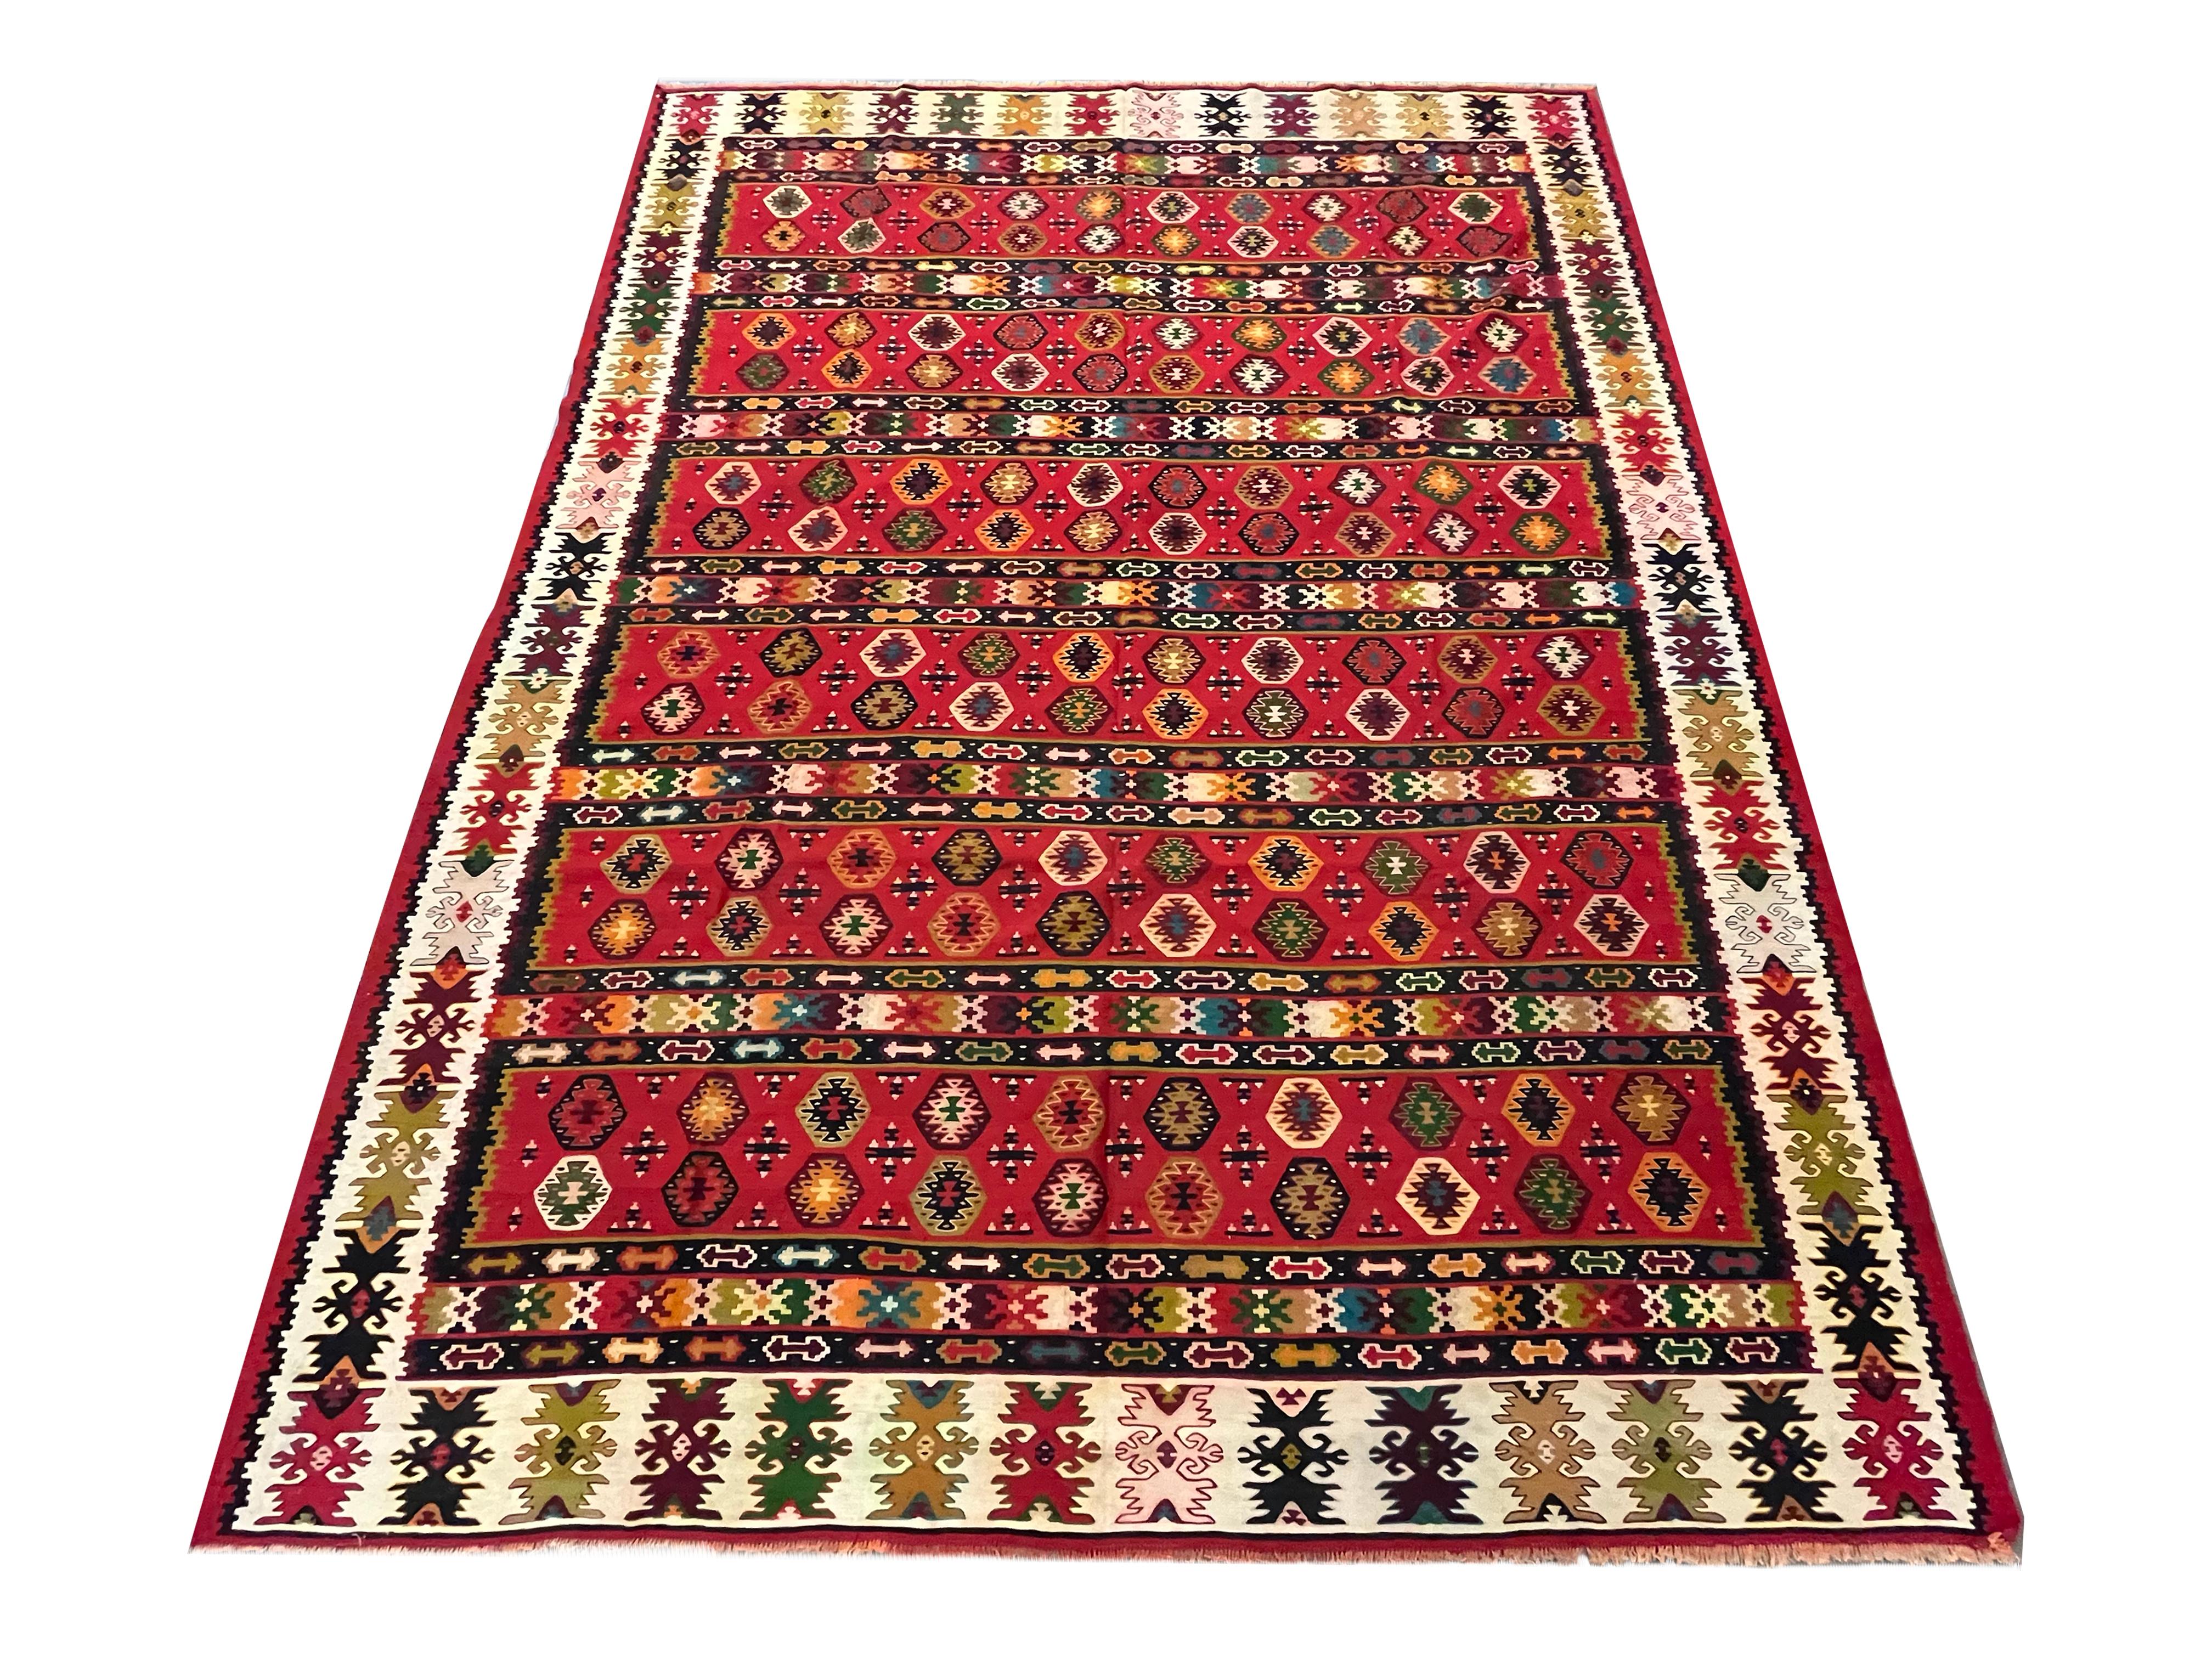 Ce kilim rouge vif est un tapis traditionnel tissé à plat à la main vers 1910. Le motif présente un dessin géométrique tissé dans des accents audacieux de noir, d'orange, de vert et de diverses autres couleurs sur un fond rouge vif. Le motif à